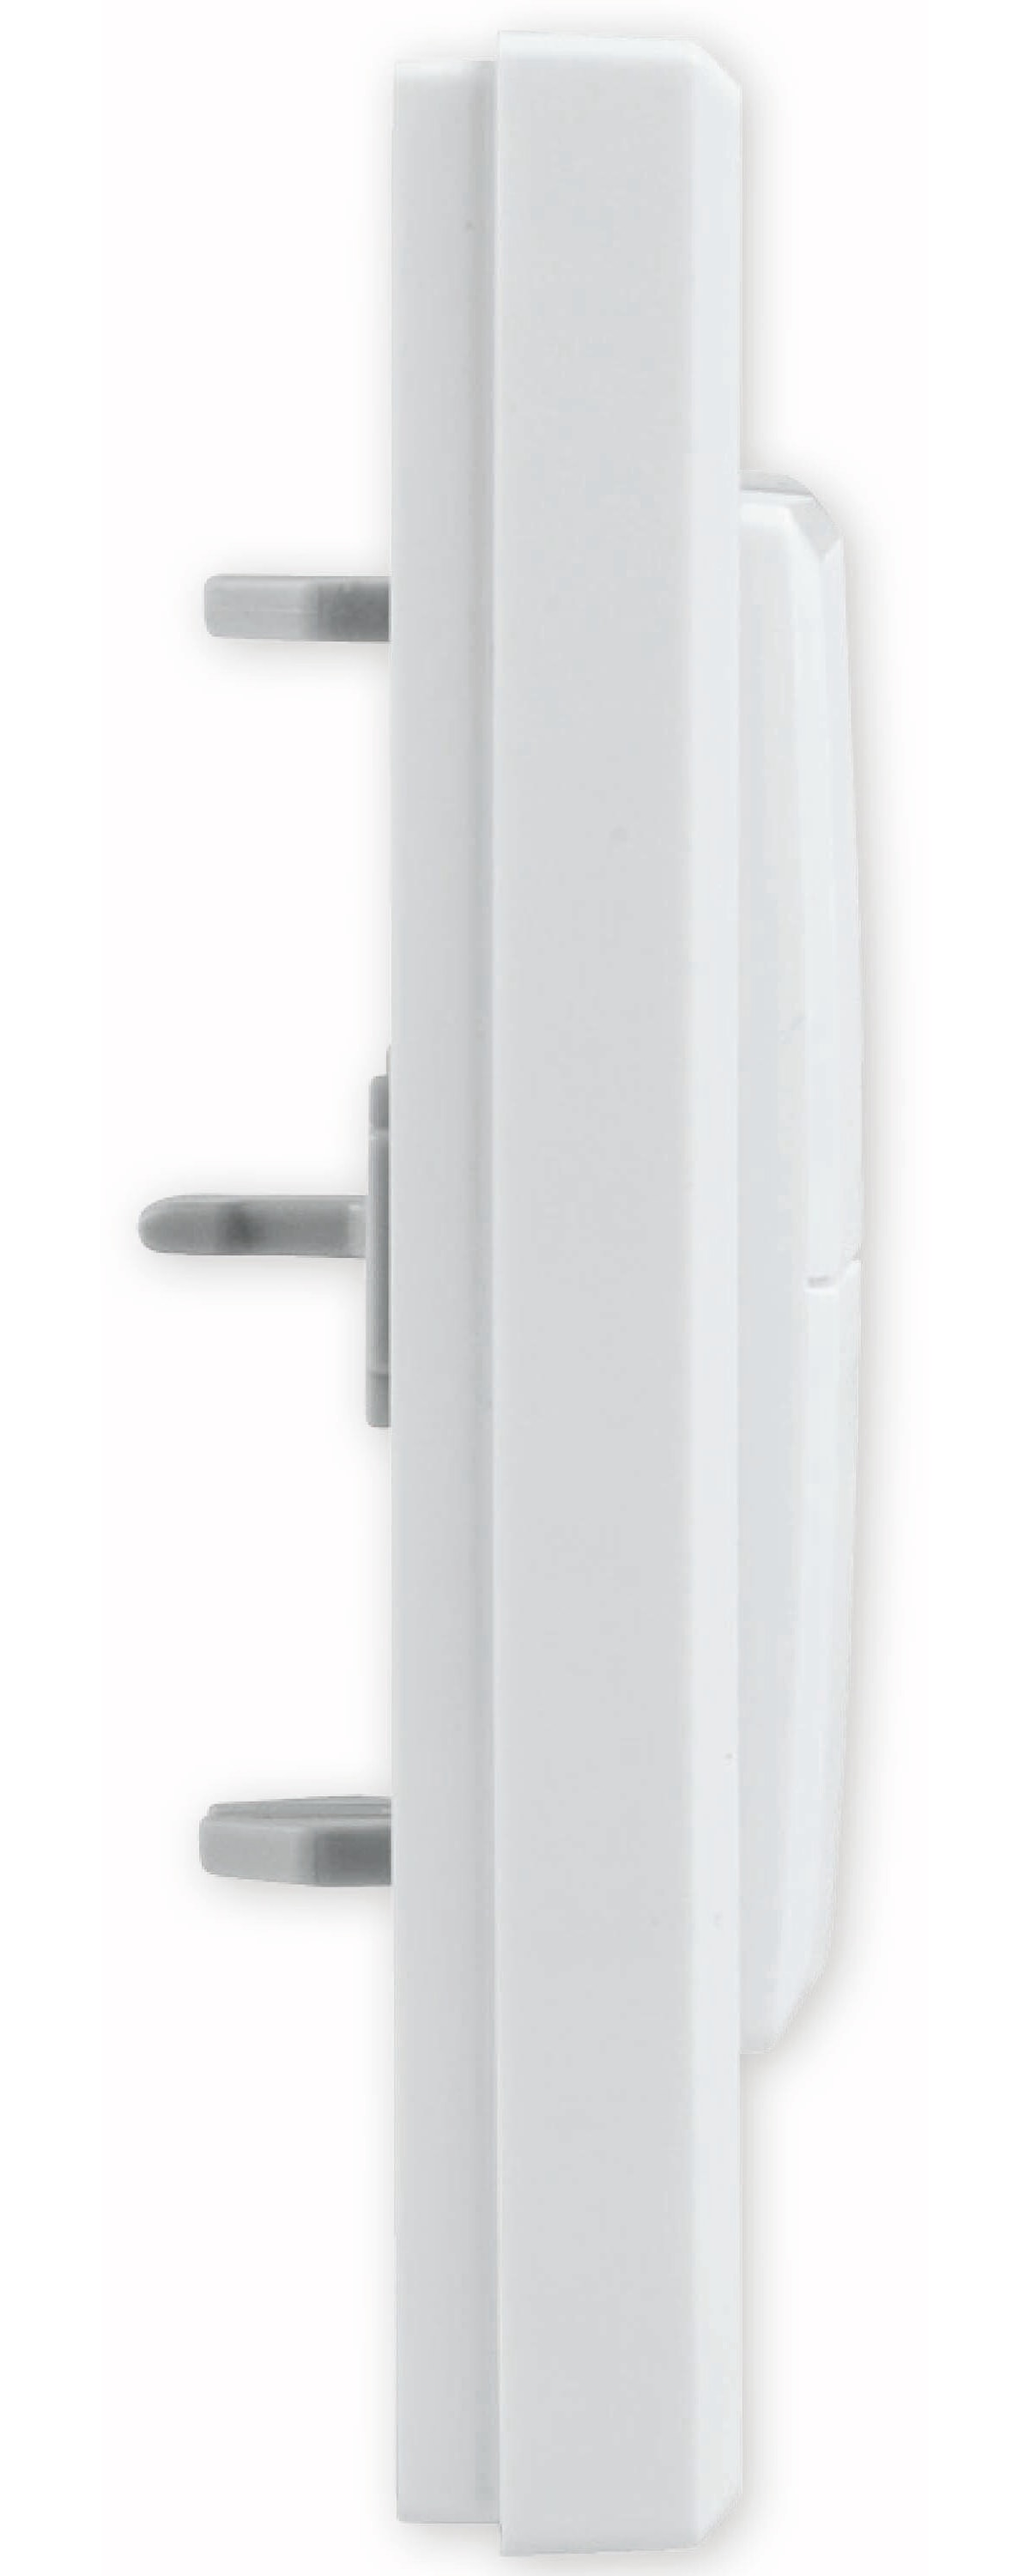 HOMEMATIC IP Smart Home 153001A0 Tasterwippe für Markenschalter, mit Pfeilen